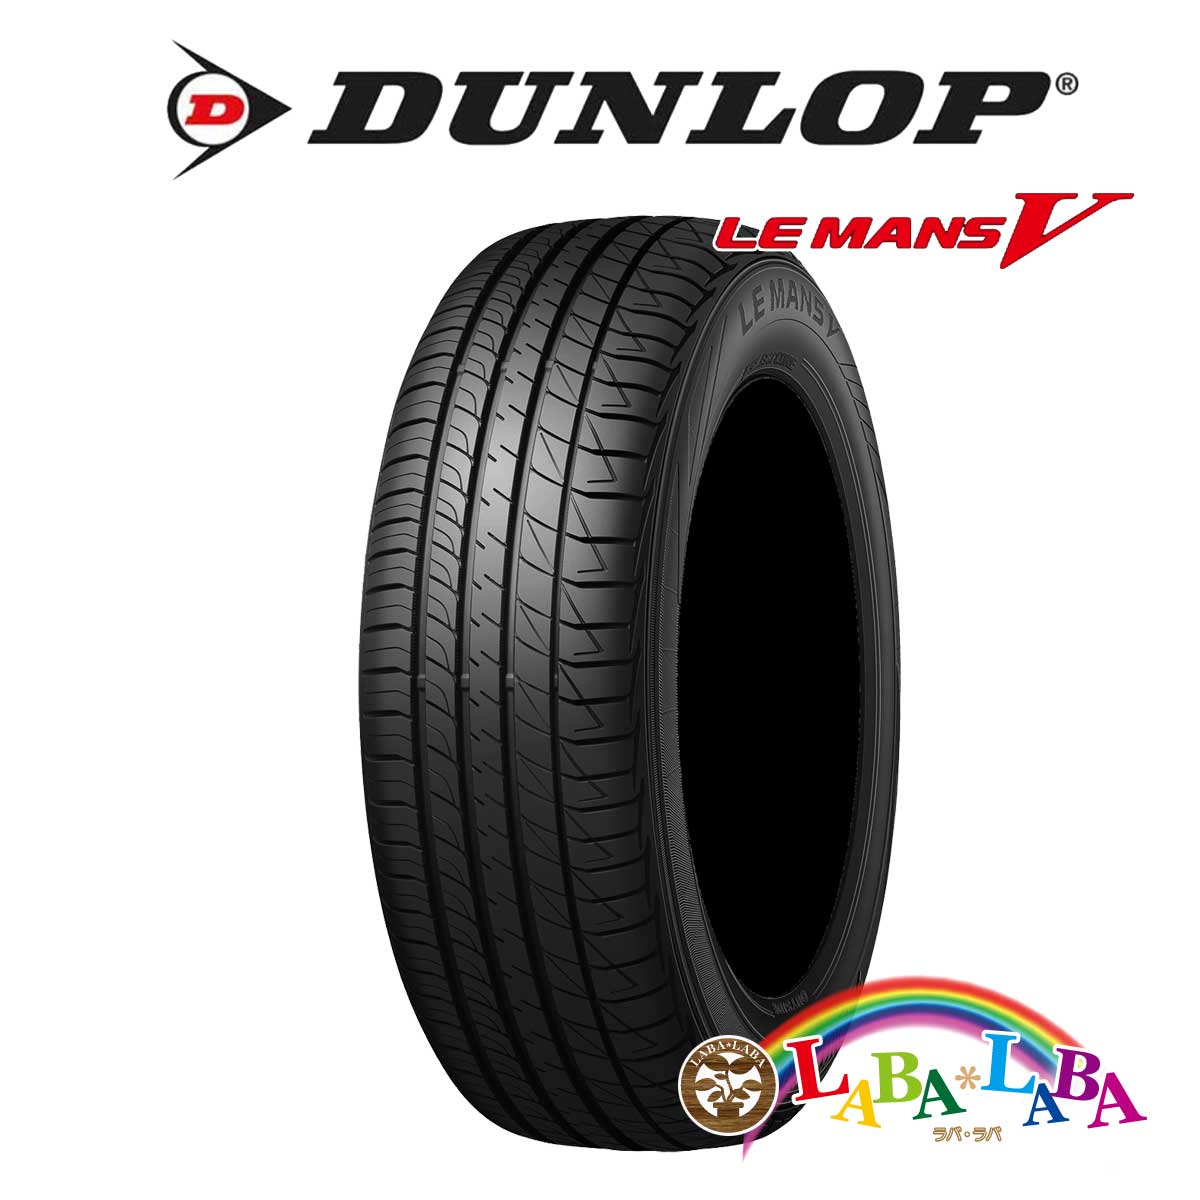 ２本以上送料無料 国産タイヤ サマータイヤ 新品 タイヤのみ DUNLOP ダンロップ MANSV ルマン LM5 国内初の直営店 毎日がバーゲンセール 75H 155 LE 65R14